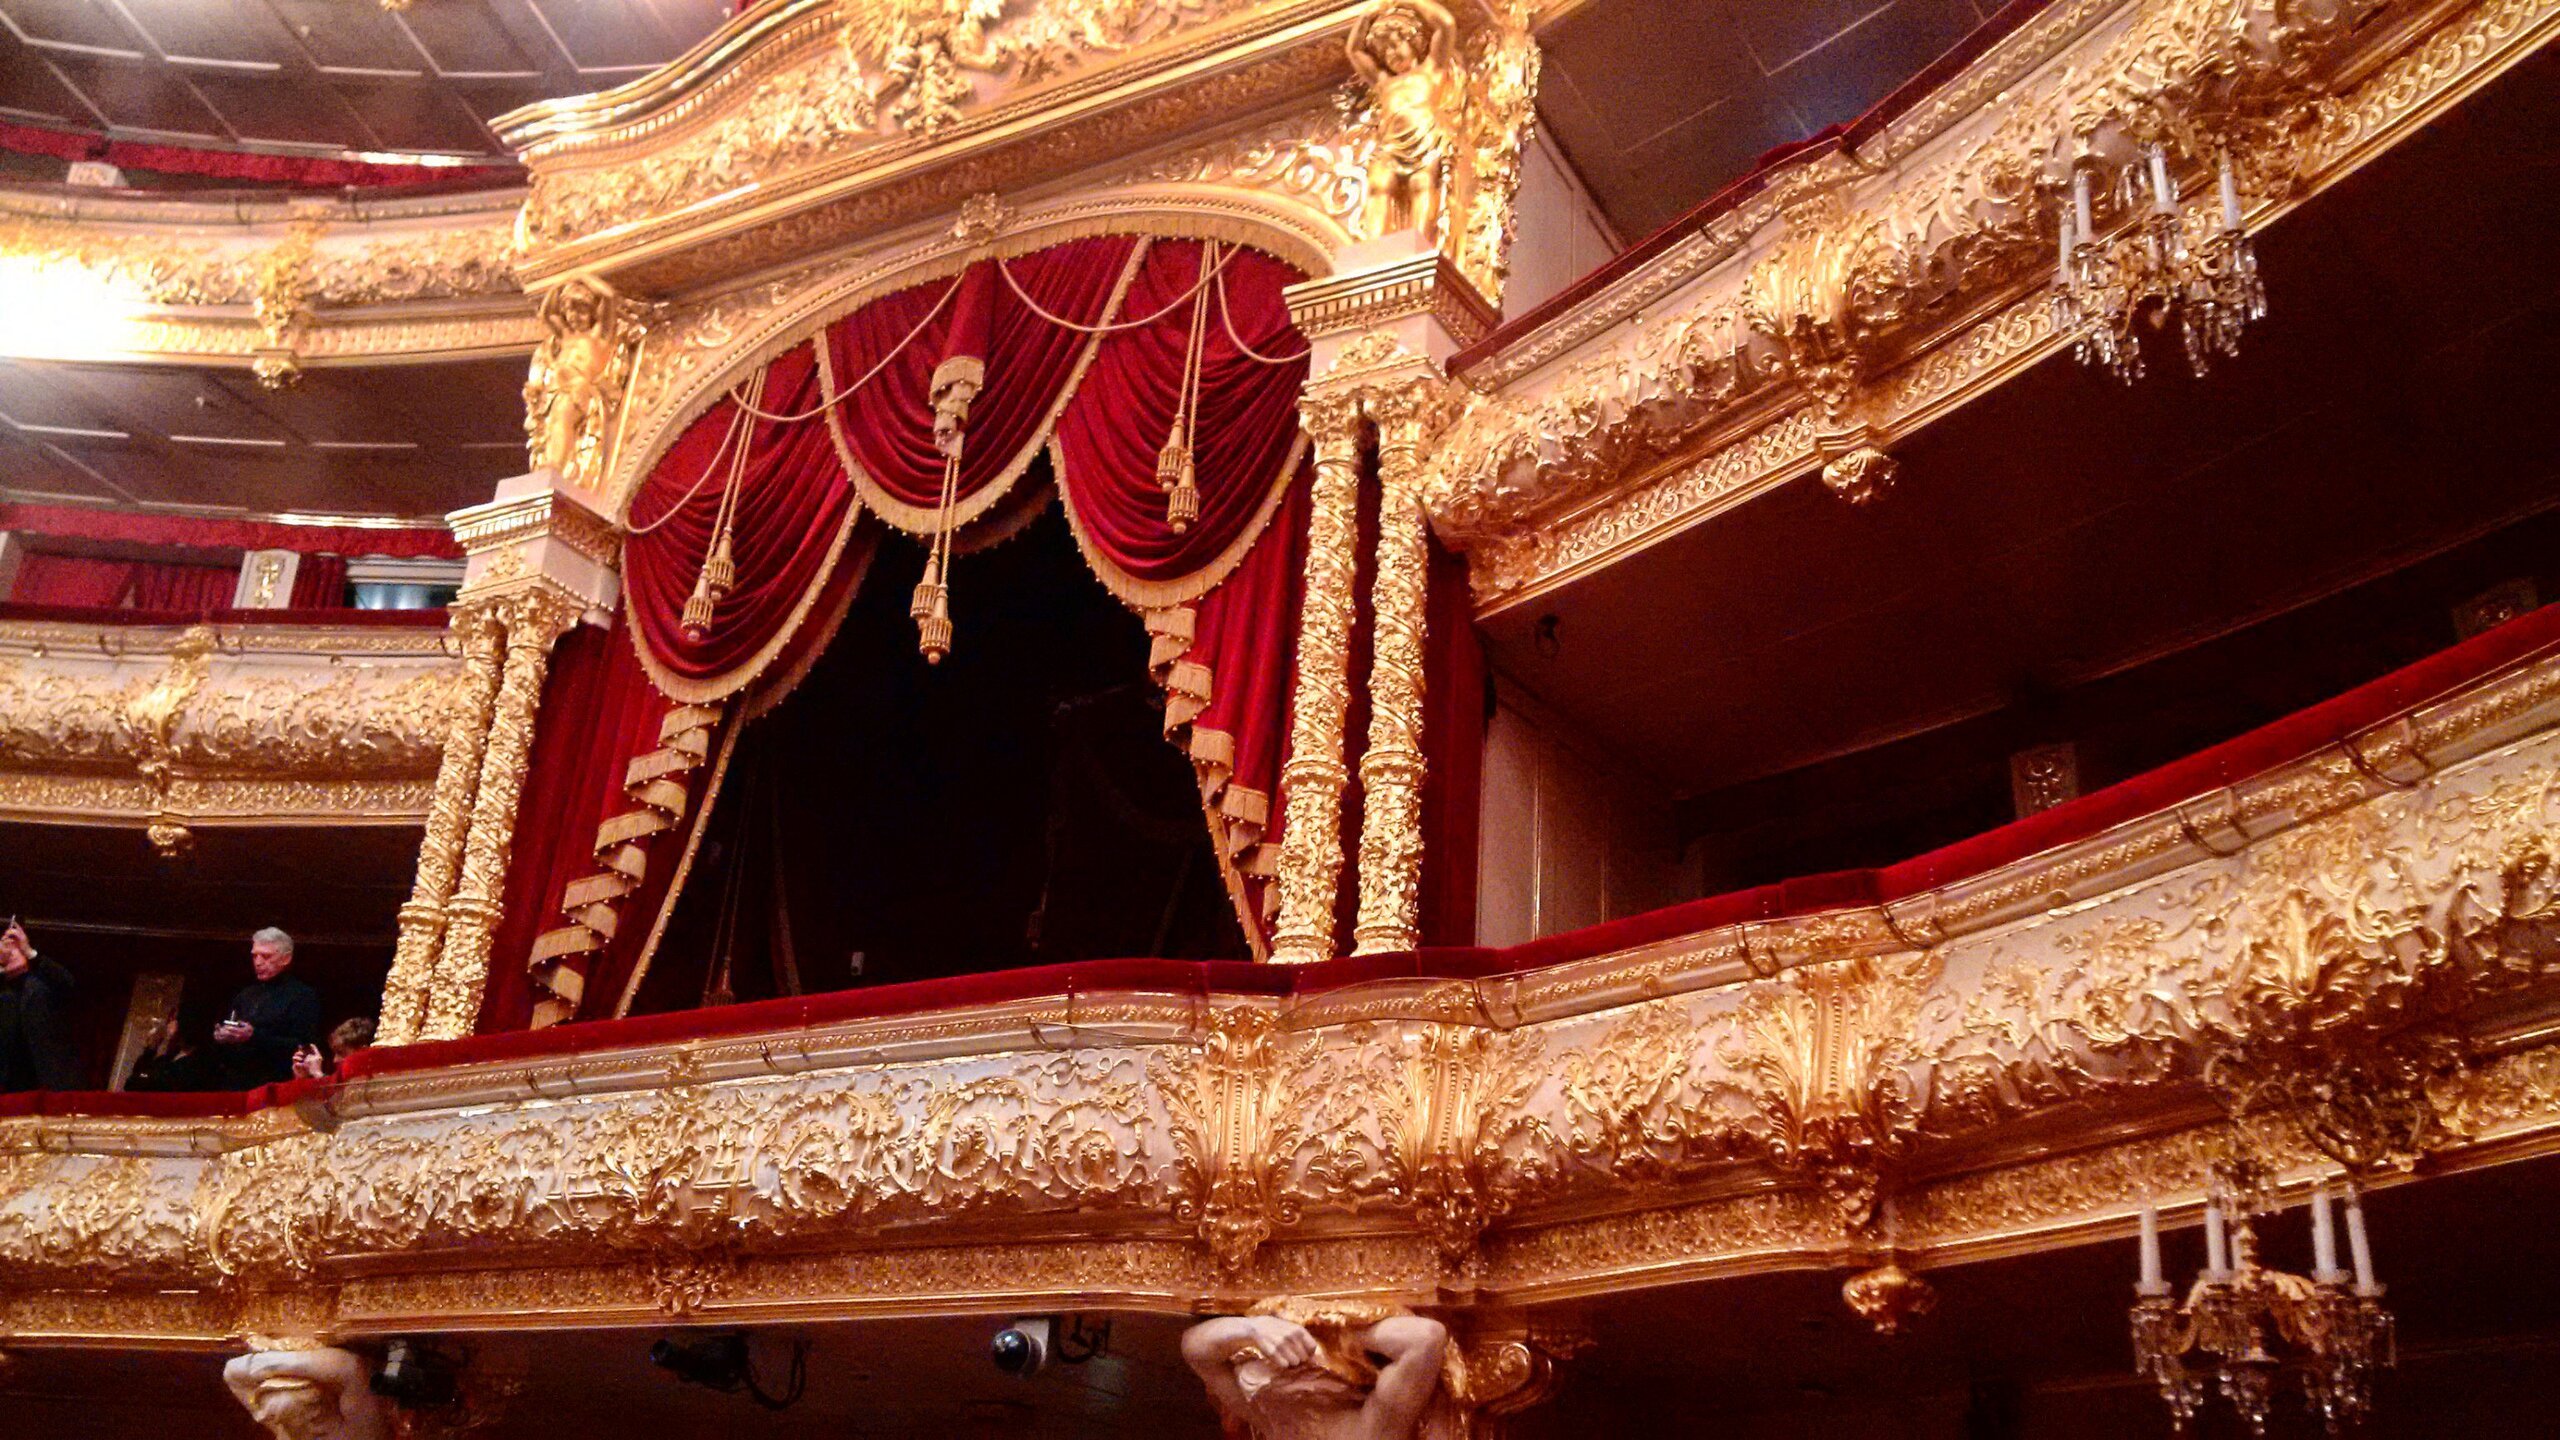 Александринский театр царская ложа фото